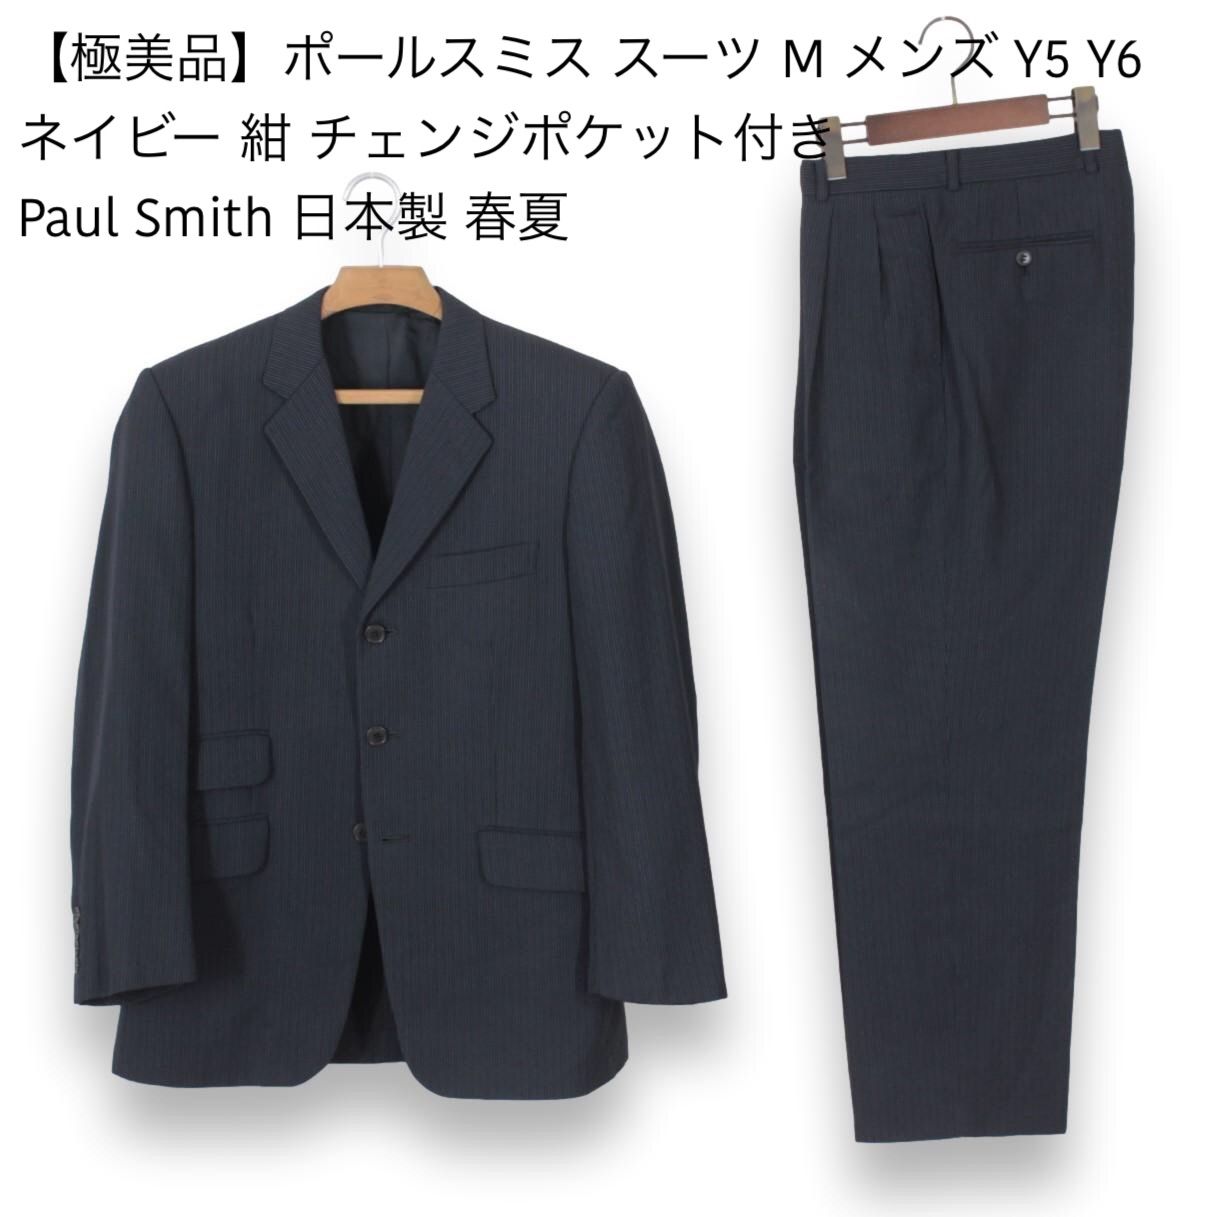 □良品□ポールスミスロンドン Paul Smith London スーツ - セットアップ